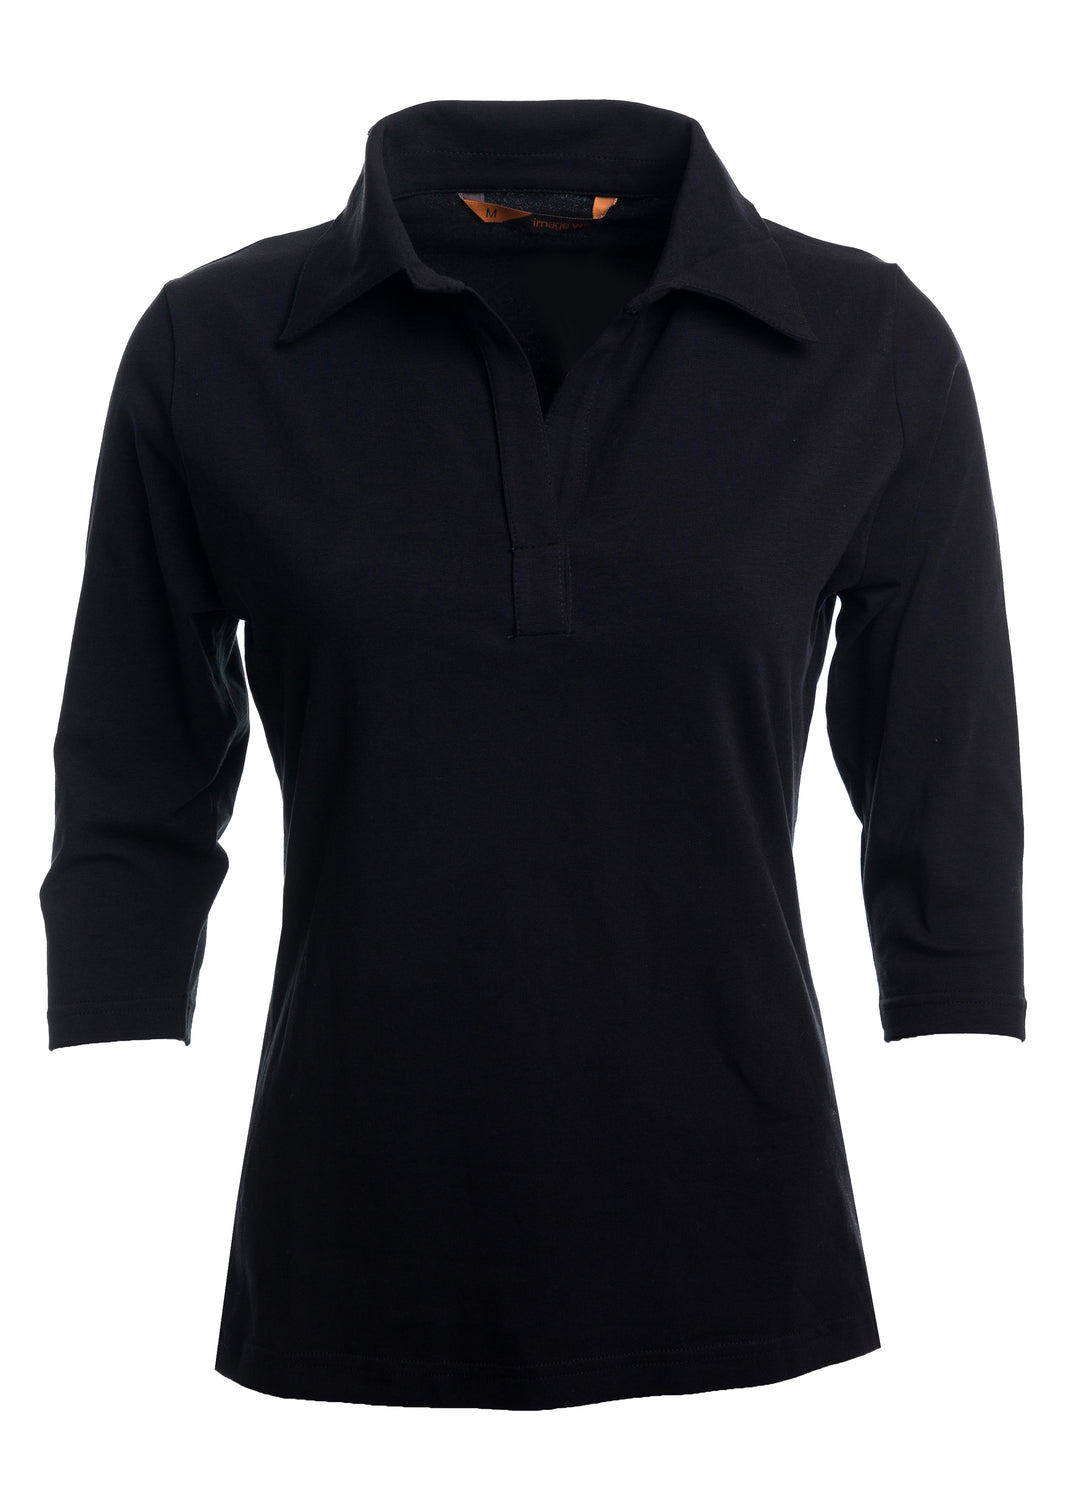 Musta naisten kauluksellinen trikoopaita 3/4 -pituisella hihalla. Vartalonmyötäinen malli. Paidassa on joustava ja miellyttävä trikoomateriaali. 